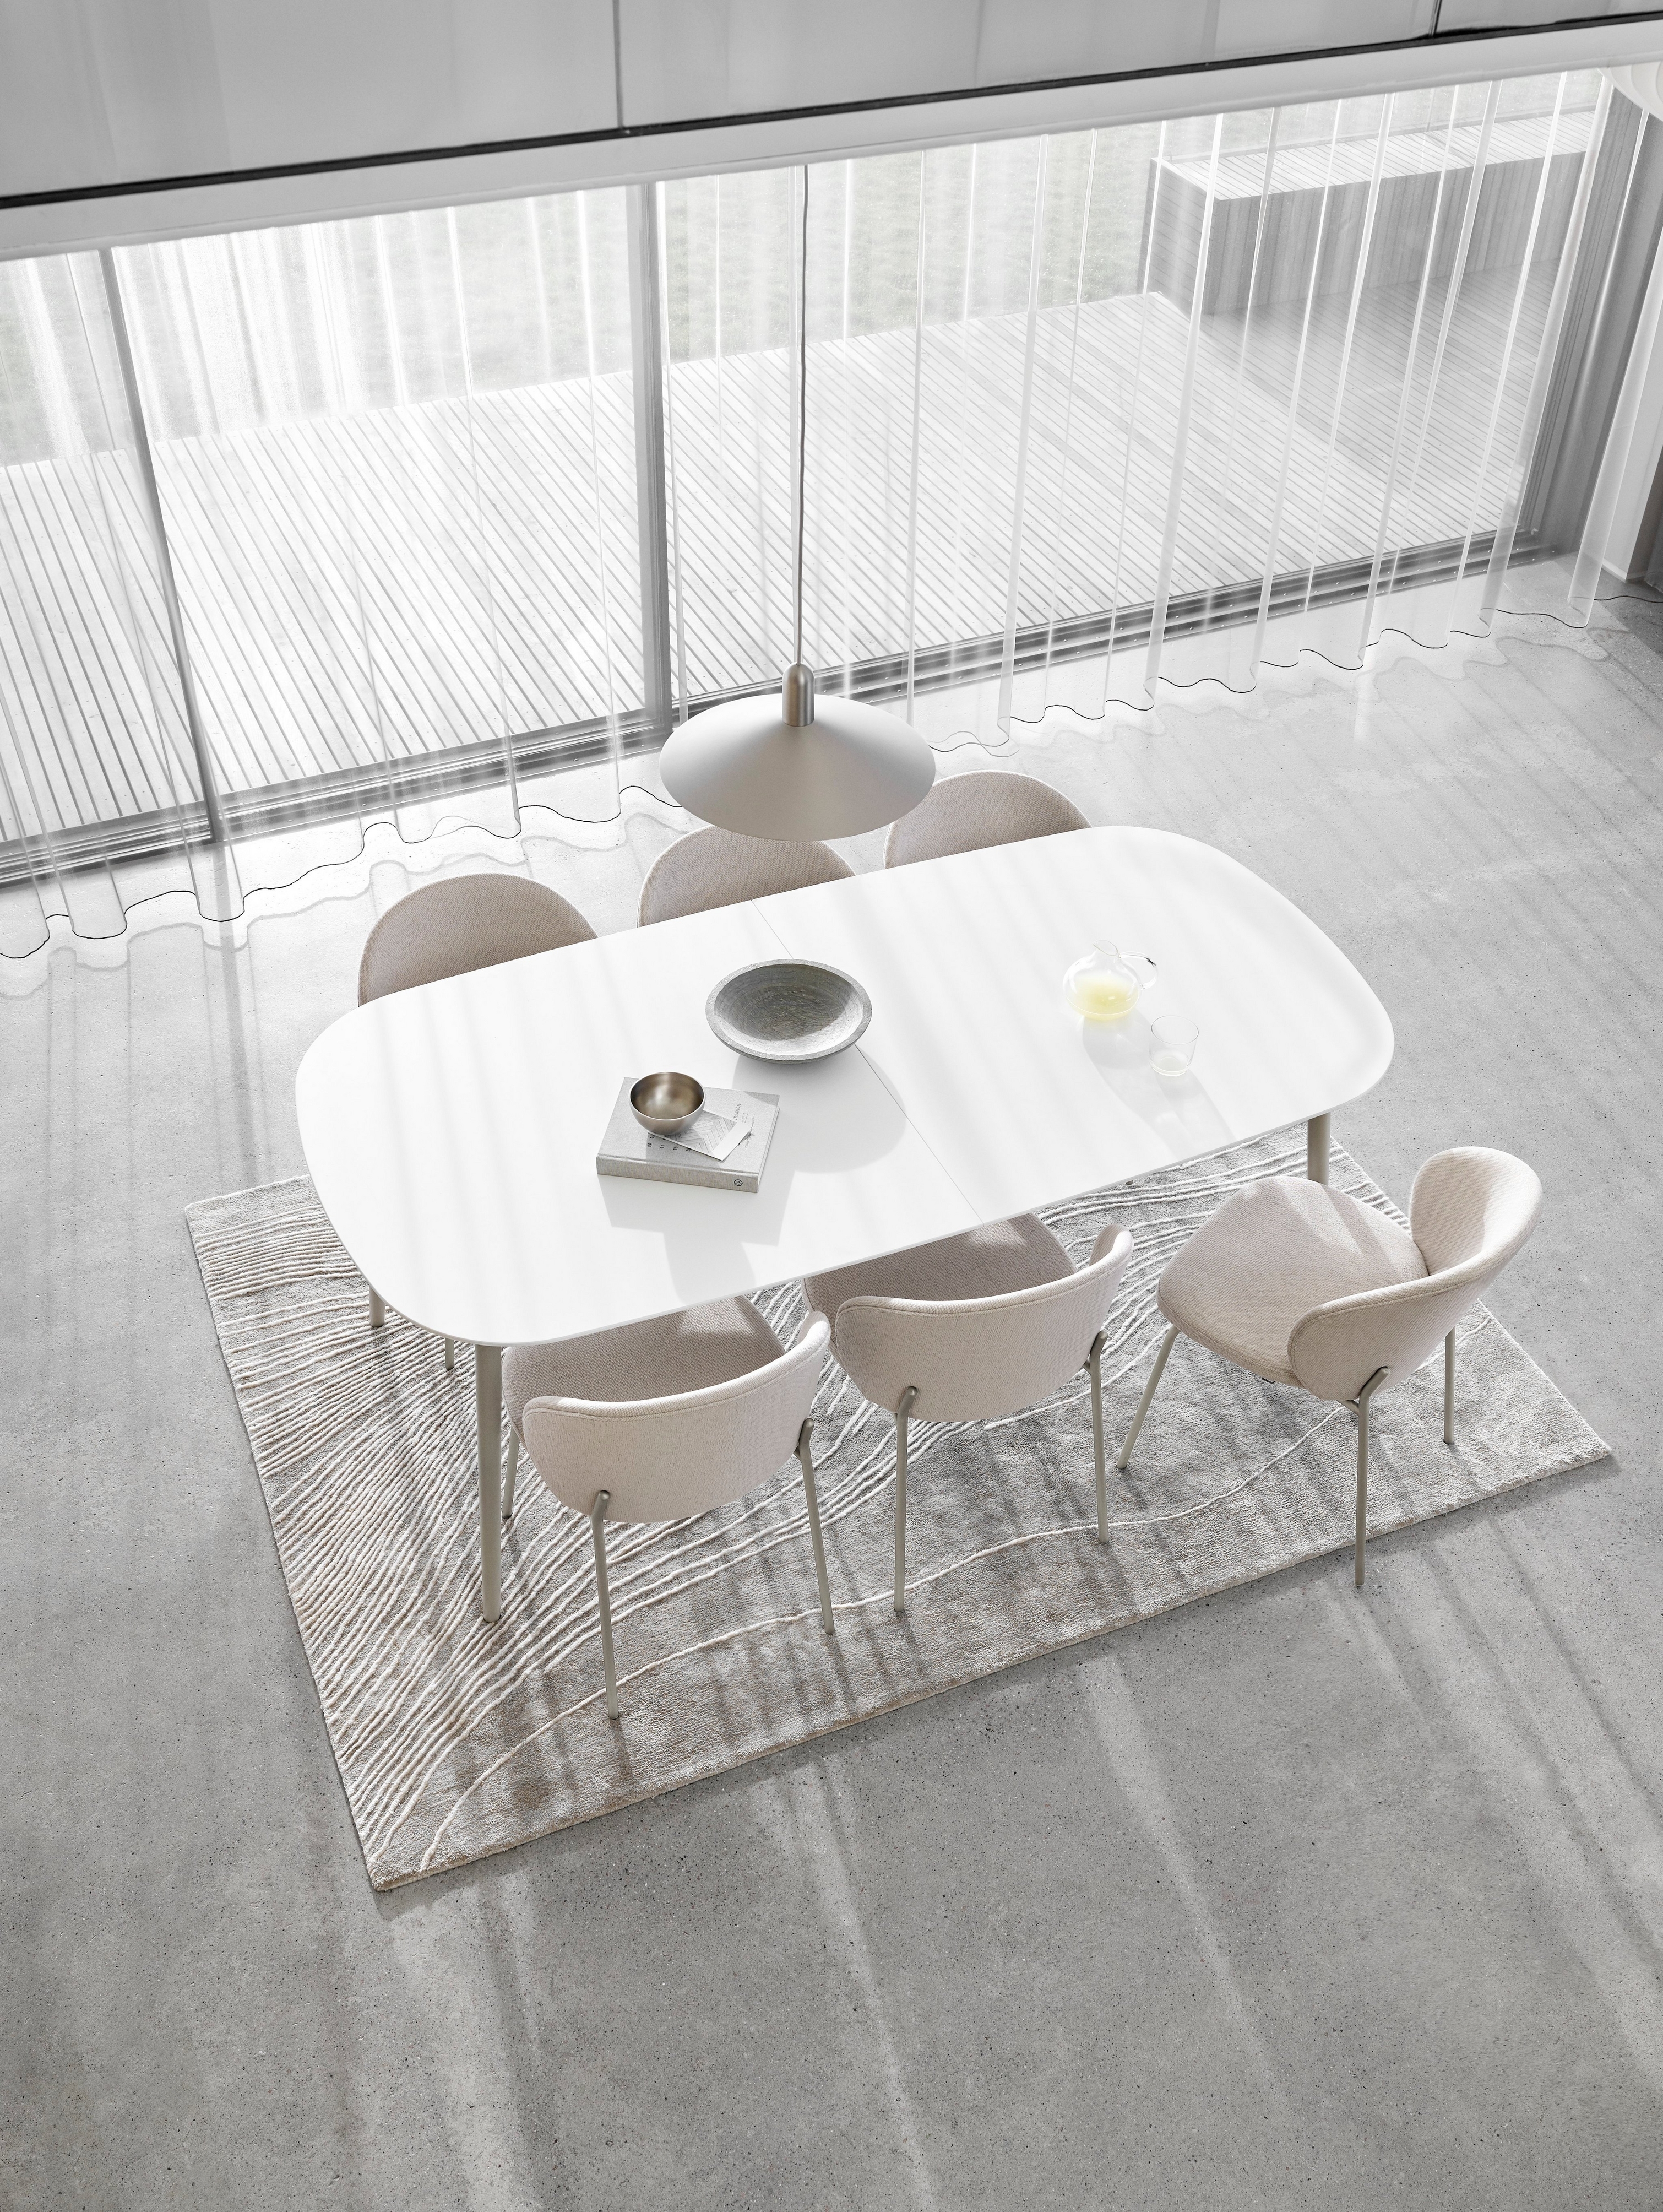 Espace repas minimaliste avec une table ovale blanche, des chaises, des rideaux transparents et un tapis texturé.